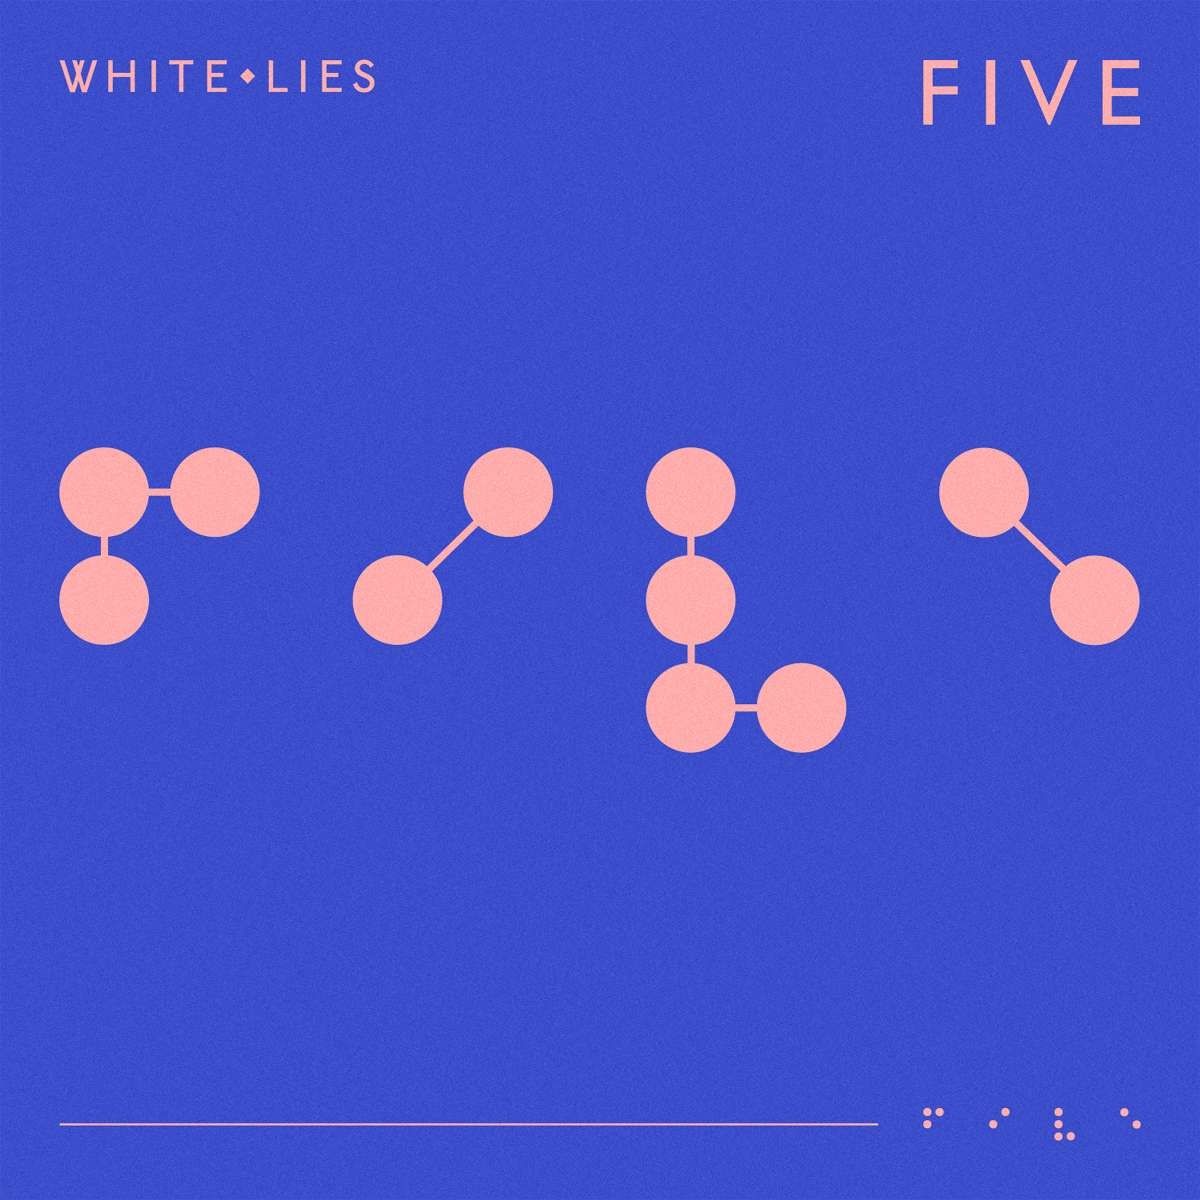 Imagem do álbum Five do(a) artista White Lies